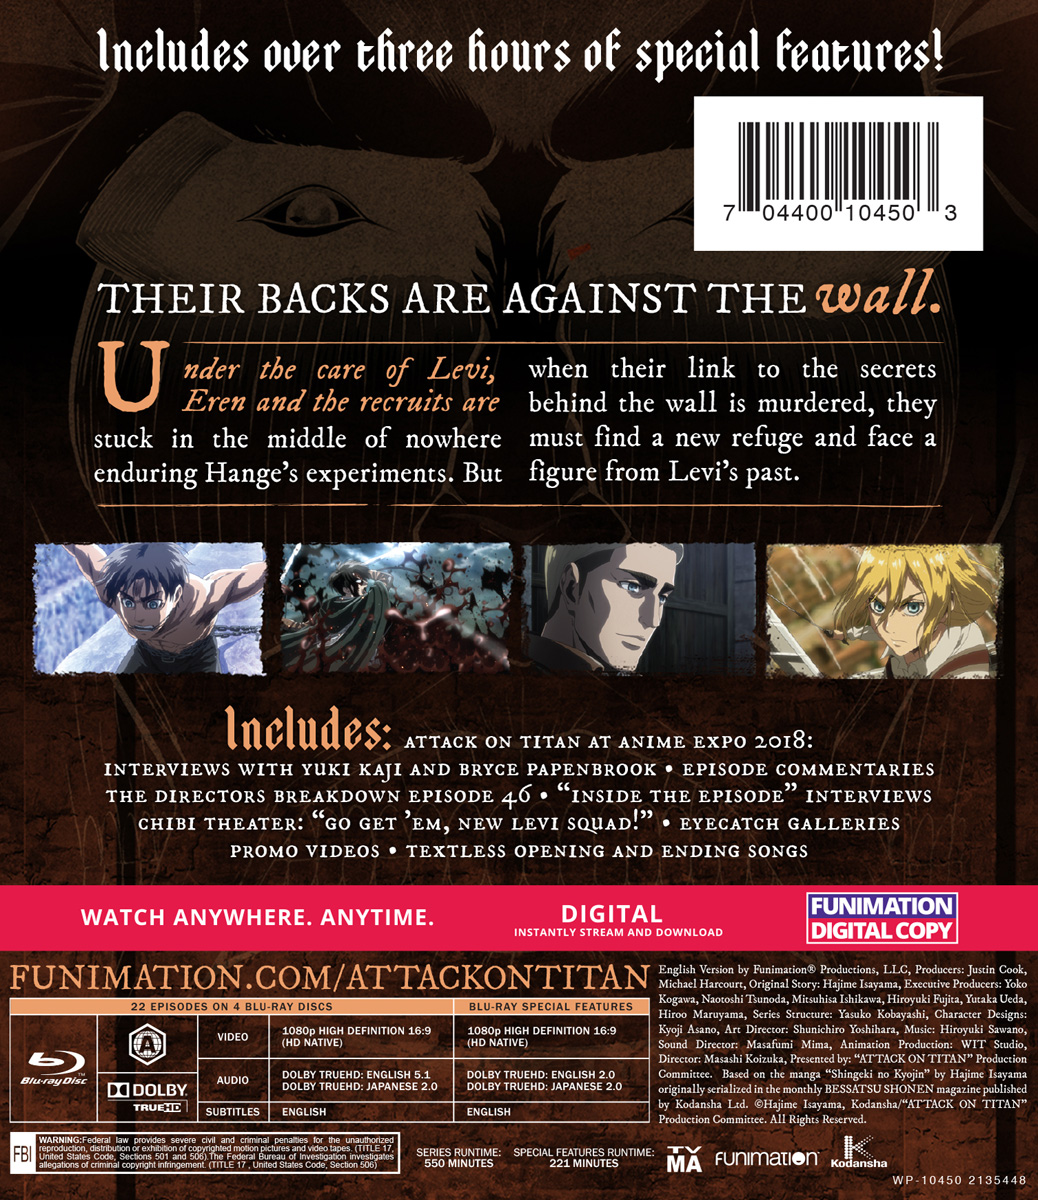 Attack On Titan - Season 3 Part 2 (4 Blu-rays) 